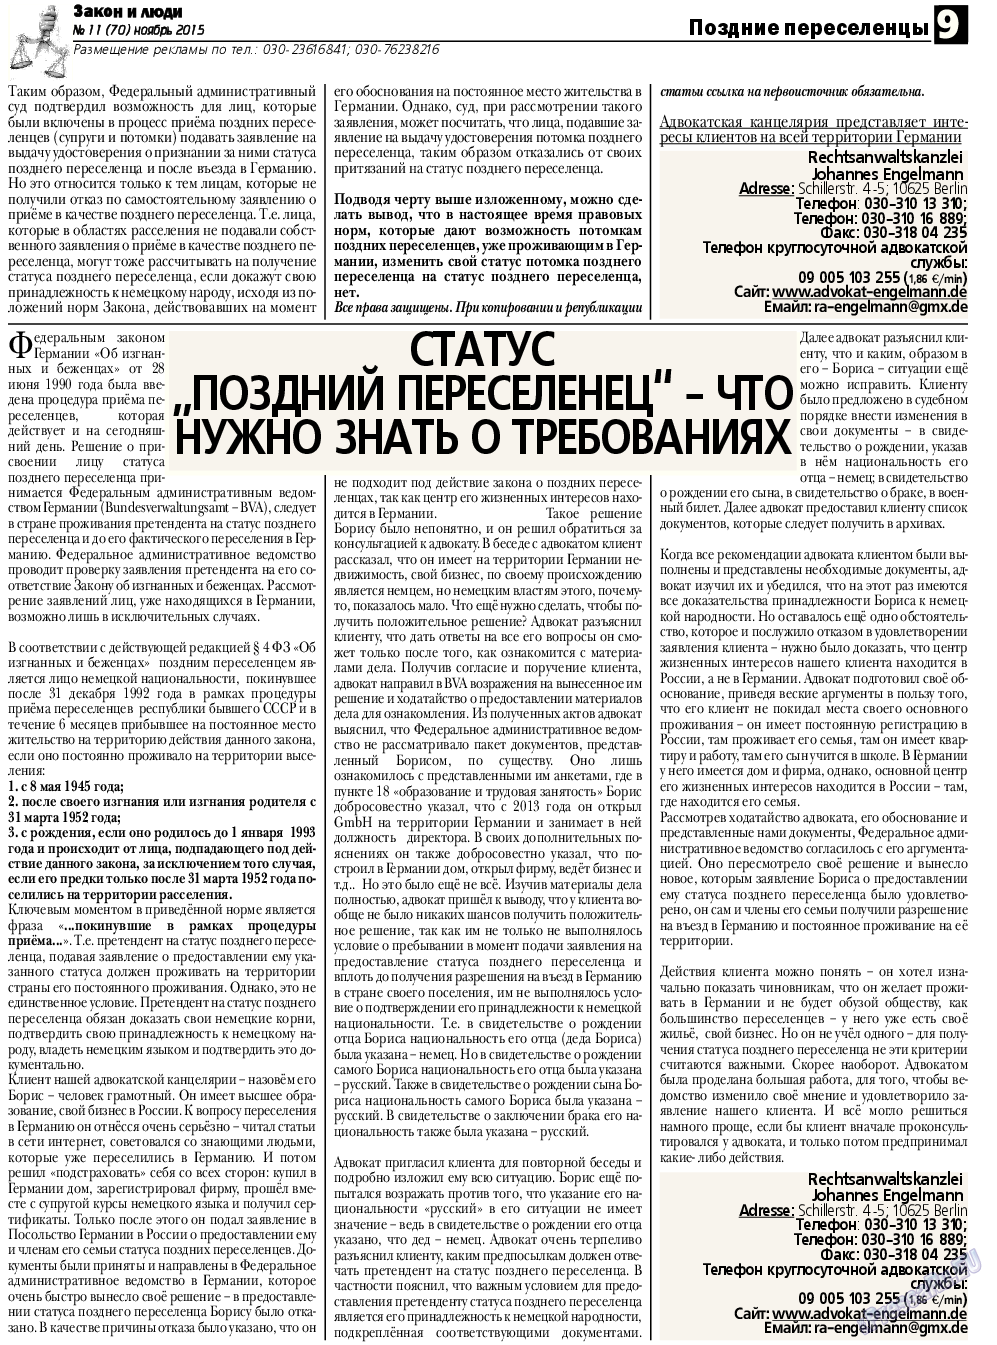 Закон и люди, газета. 2015 №11 стр.9